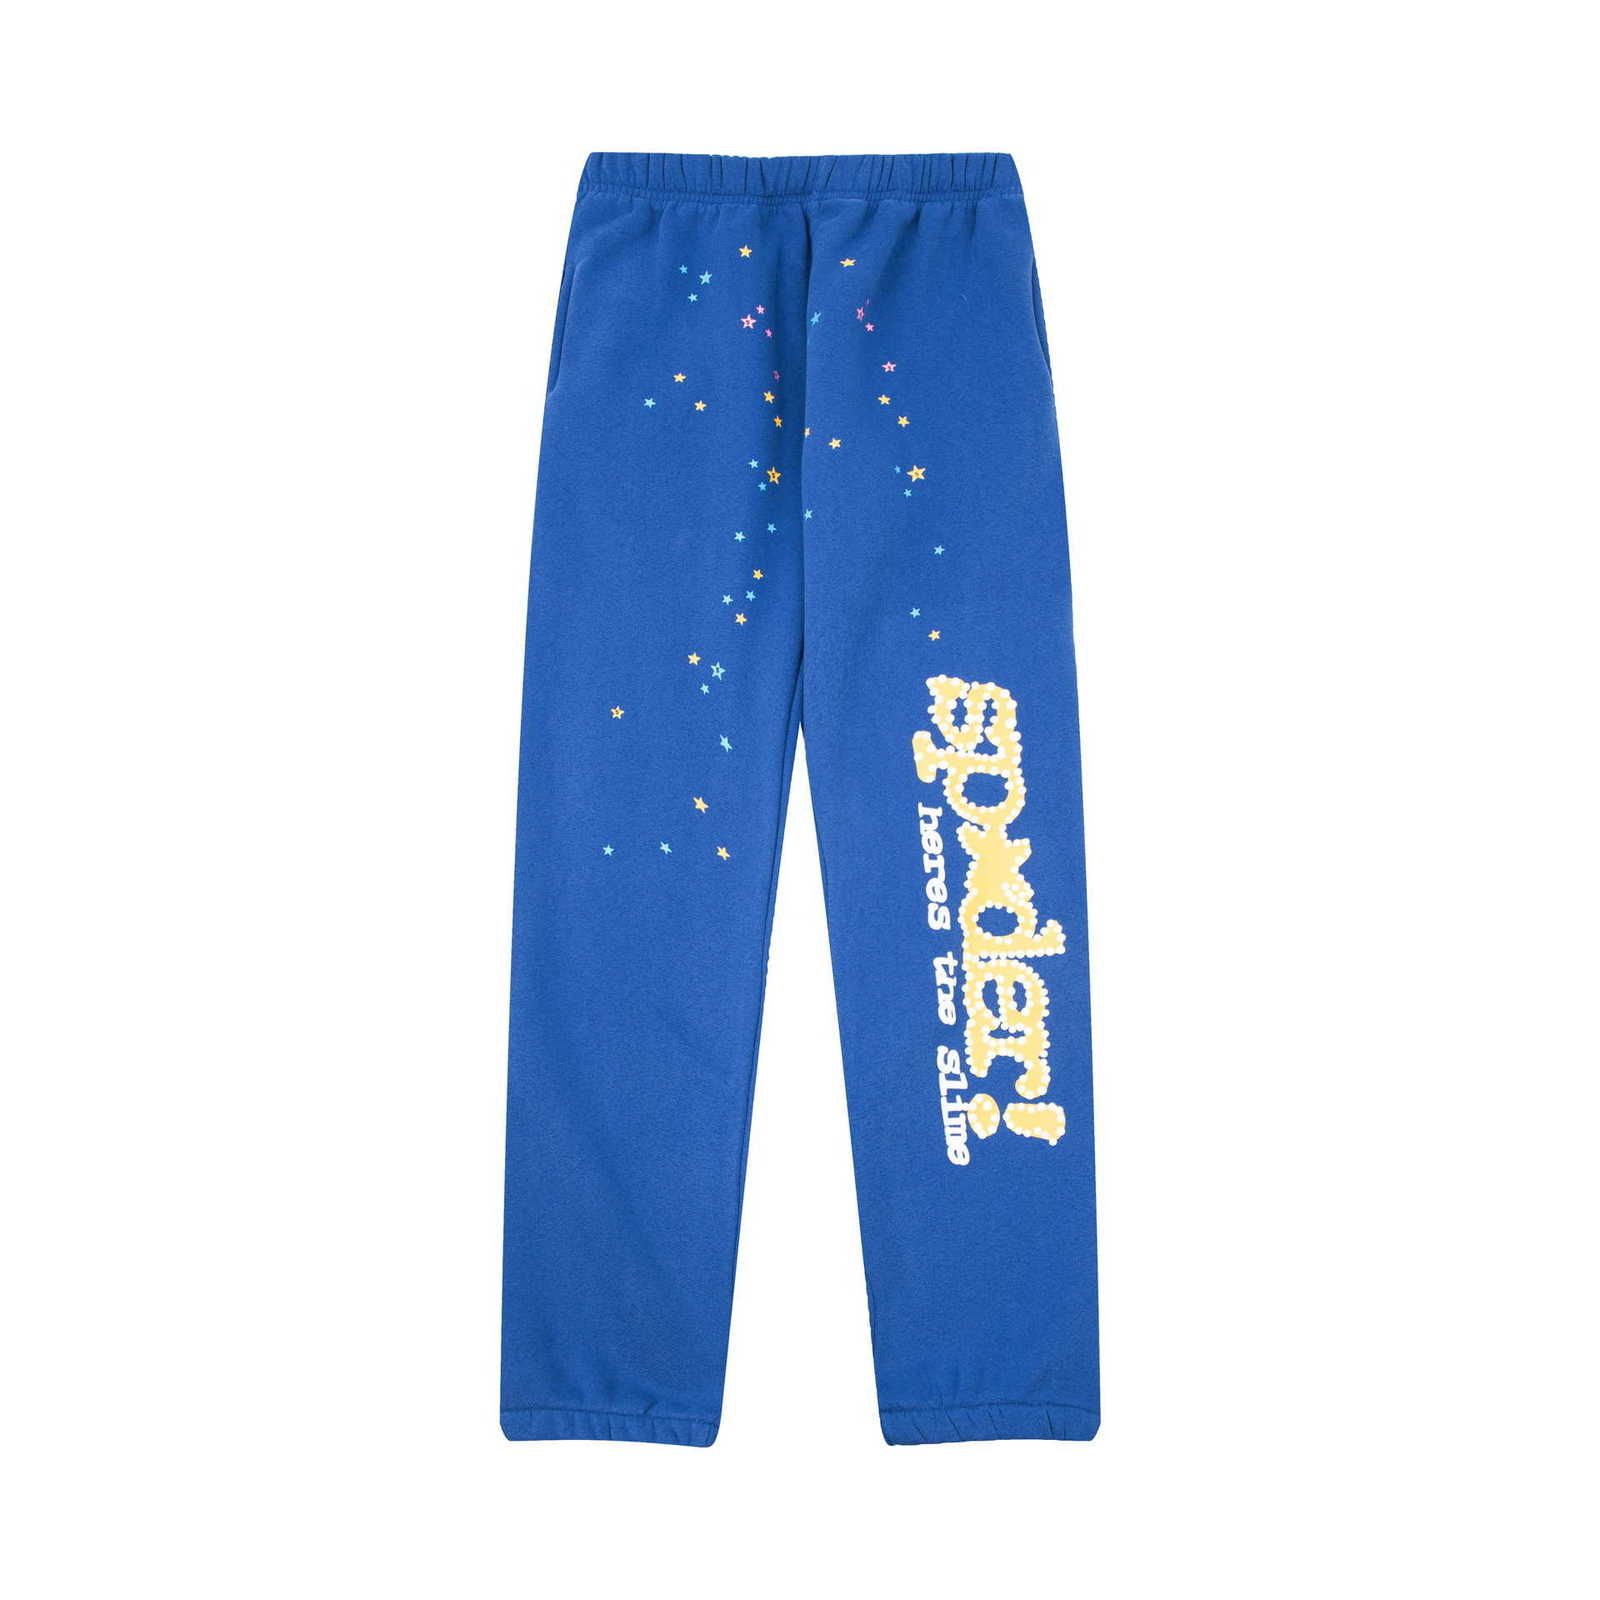 bleu coloré (pantalon sp06)